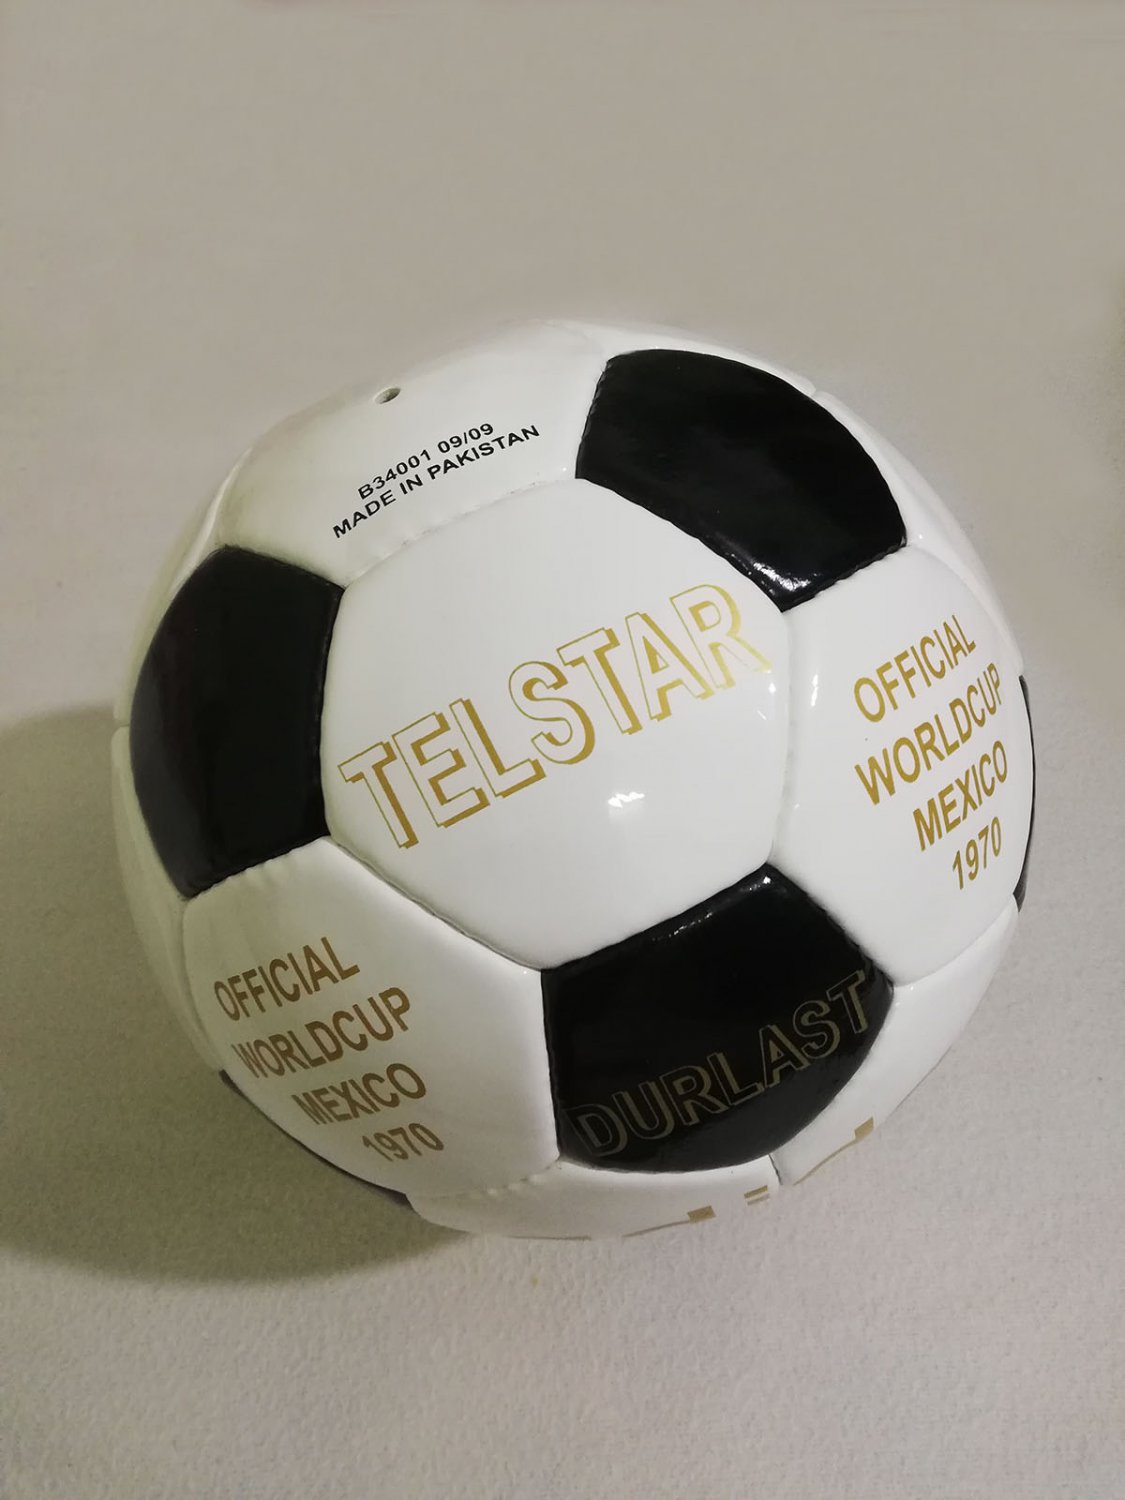 ADIDAS TELSTAR DURLASTÂ® 1970 OFFICIAL WORLD CUP 1970 MATCH BALL